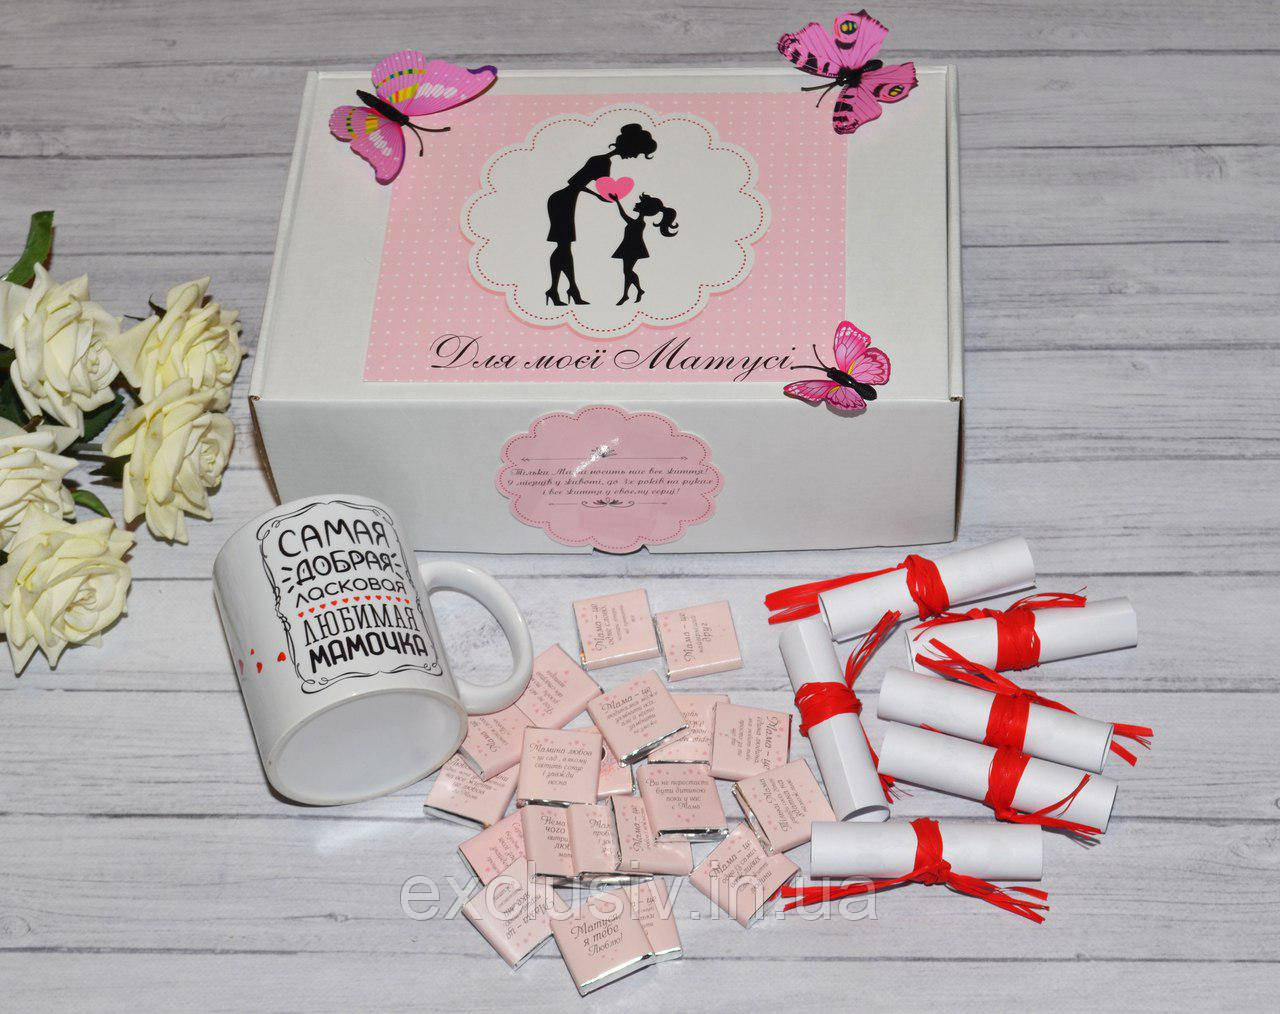 Подарунковий набір для мами з чашкою, шоколадом і записками зі словами любові до мами.